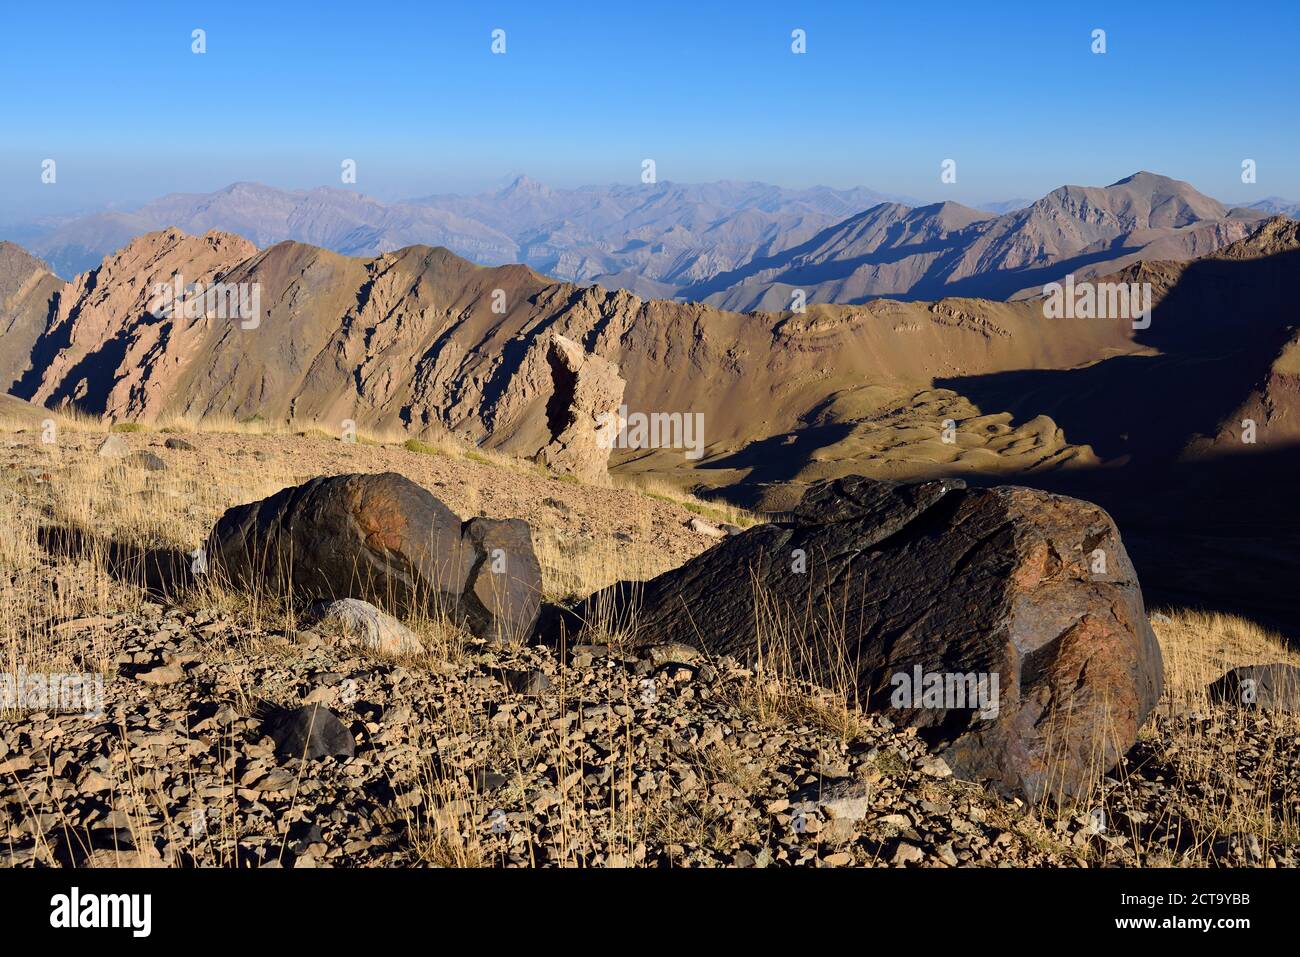 Iran, Mazandaran Province, Alborz Mountains,  Takht-e Suleyman Massif, view towards Damavand Stock Photo